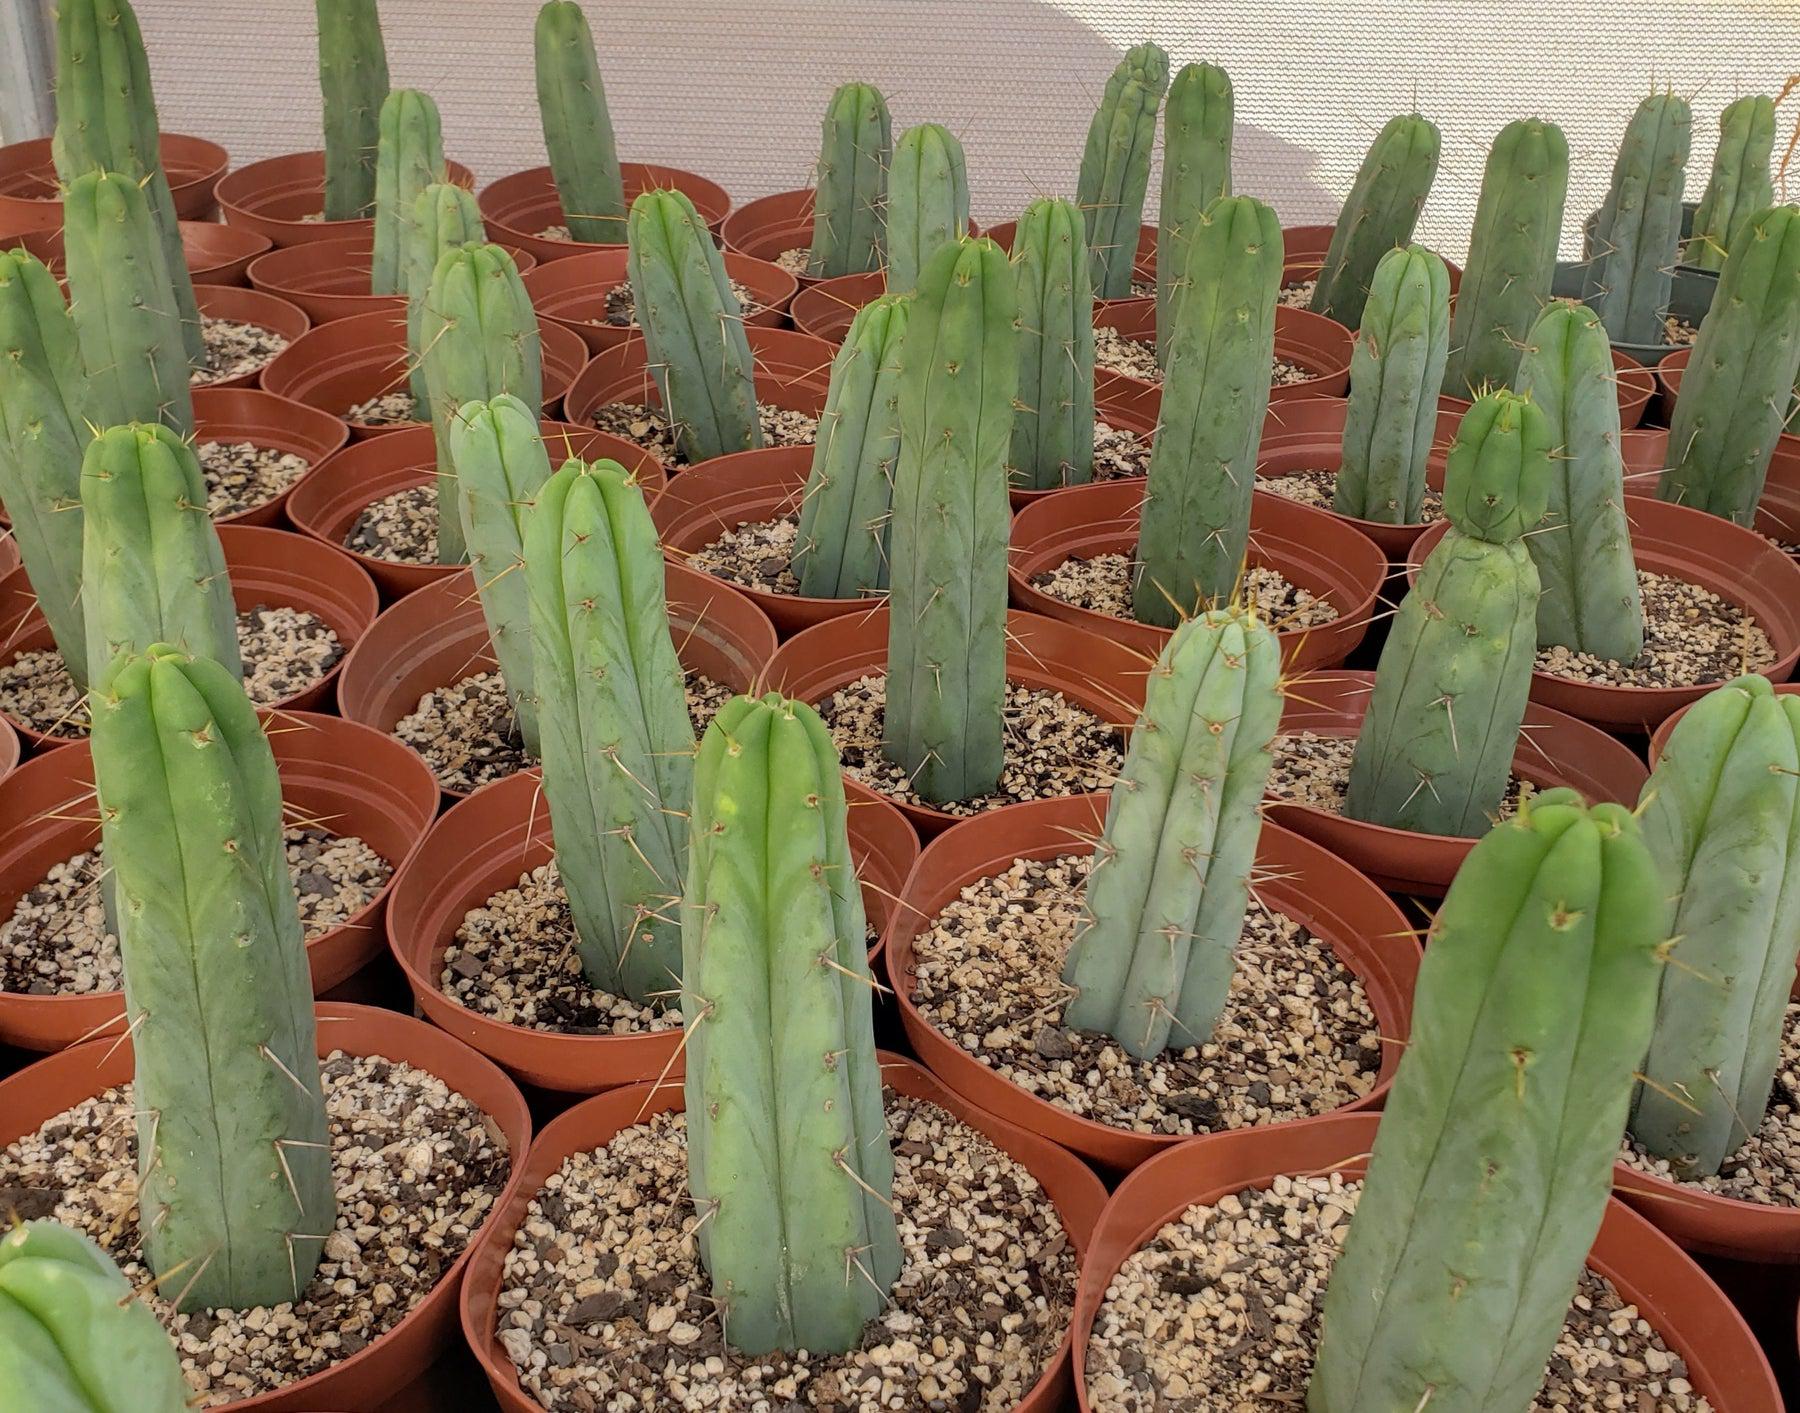 #EC134 EXACT Trichocereus Bridgesii Jiimz Cactus approx. 6"-Cactus - Large - Exact-The Succulent Source